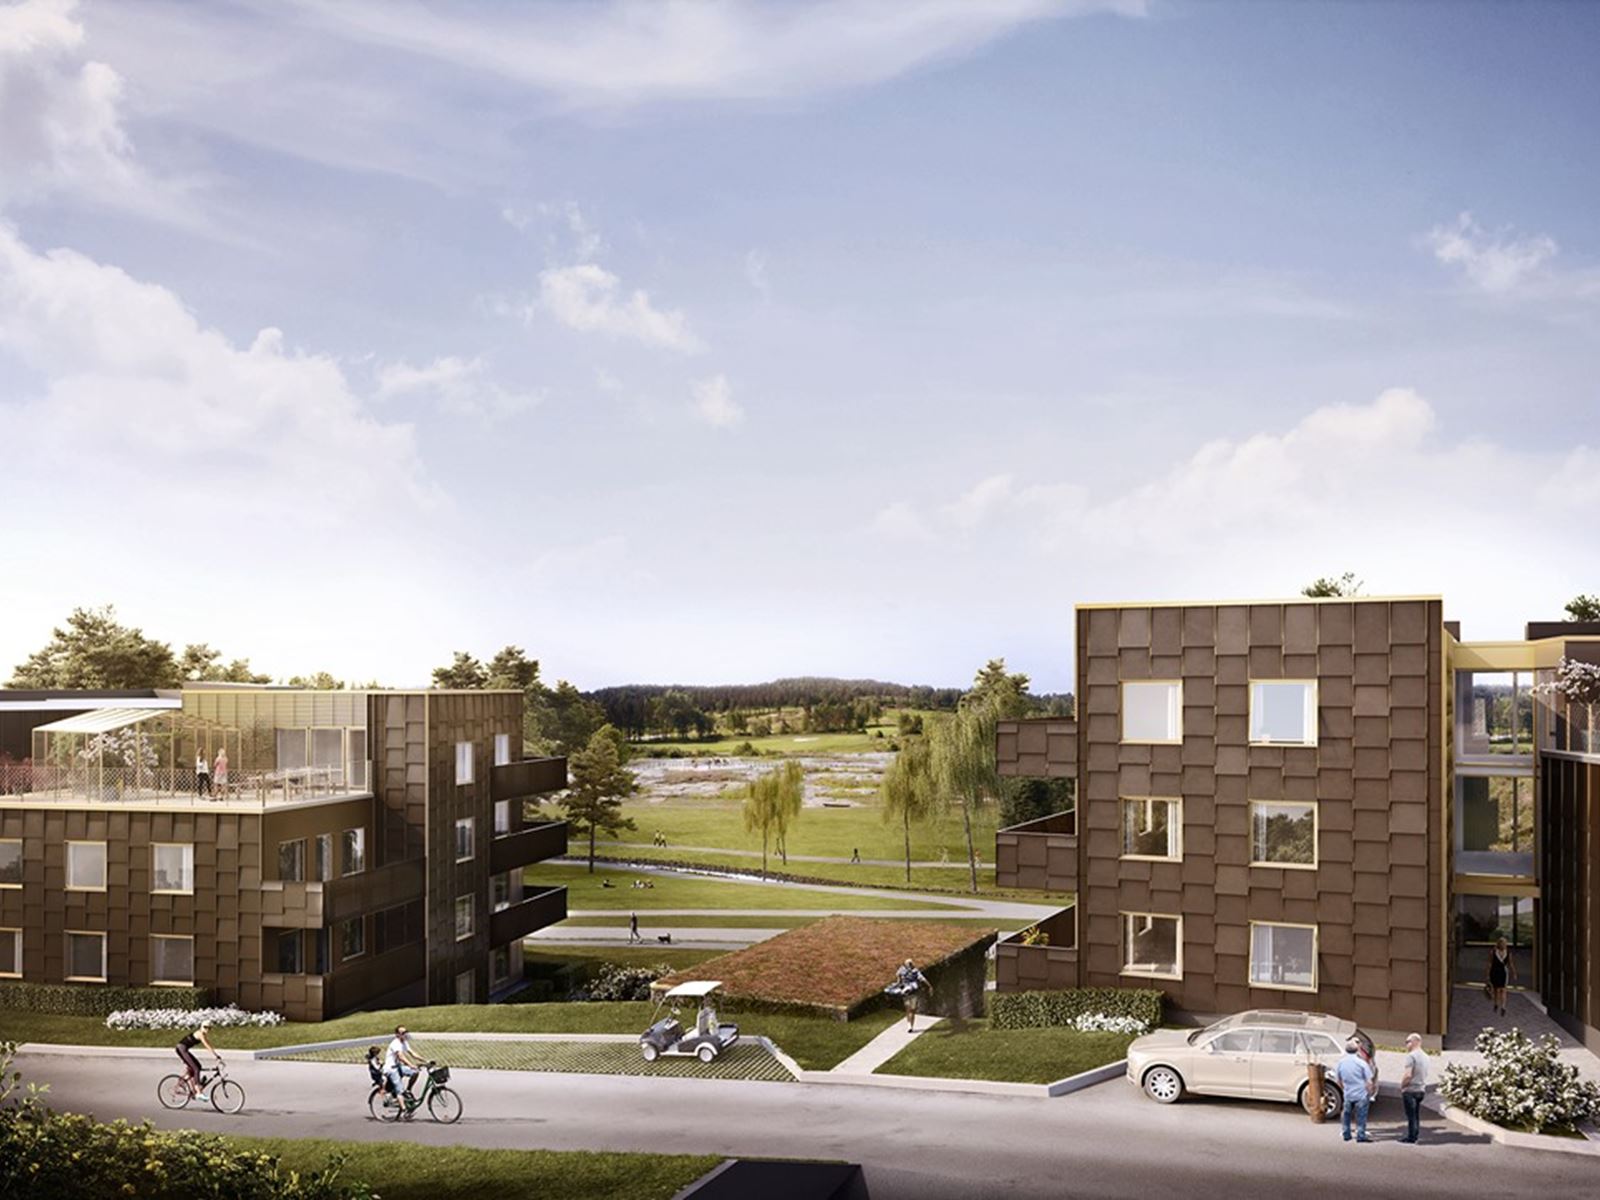 Moderna hem i fritt läge, granne med den nya parken. Bostadsrätt i Hills Villastad Söderläget - lgh 1-1003 - Bjurfors